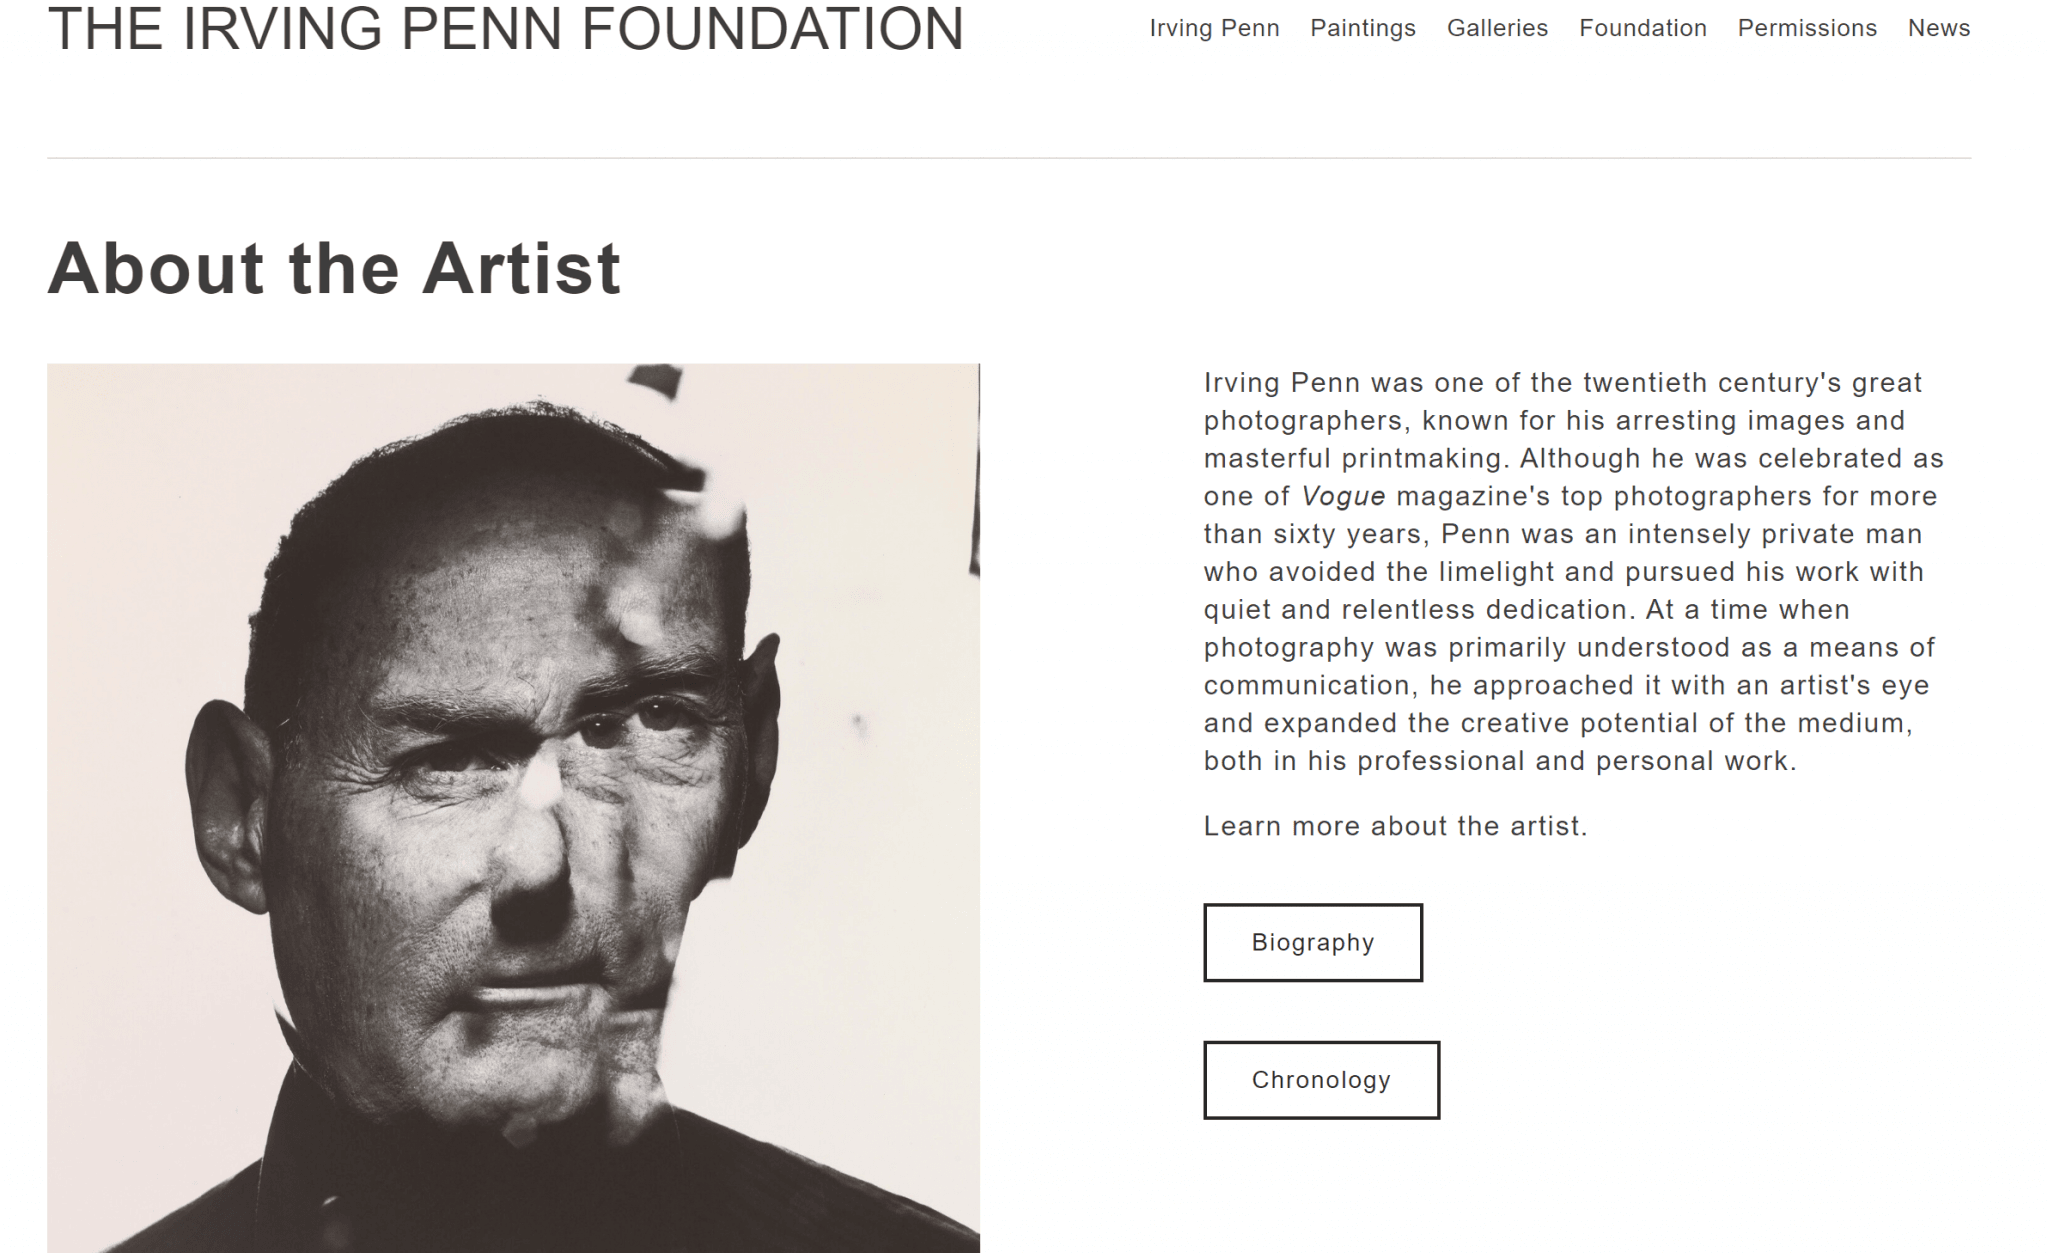 Irving Penn Foundation’s website